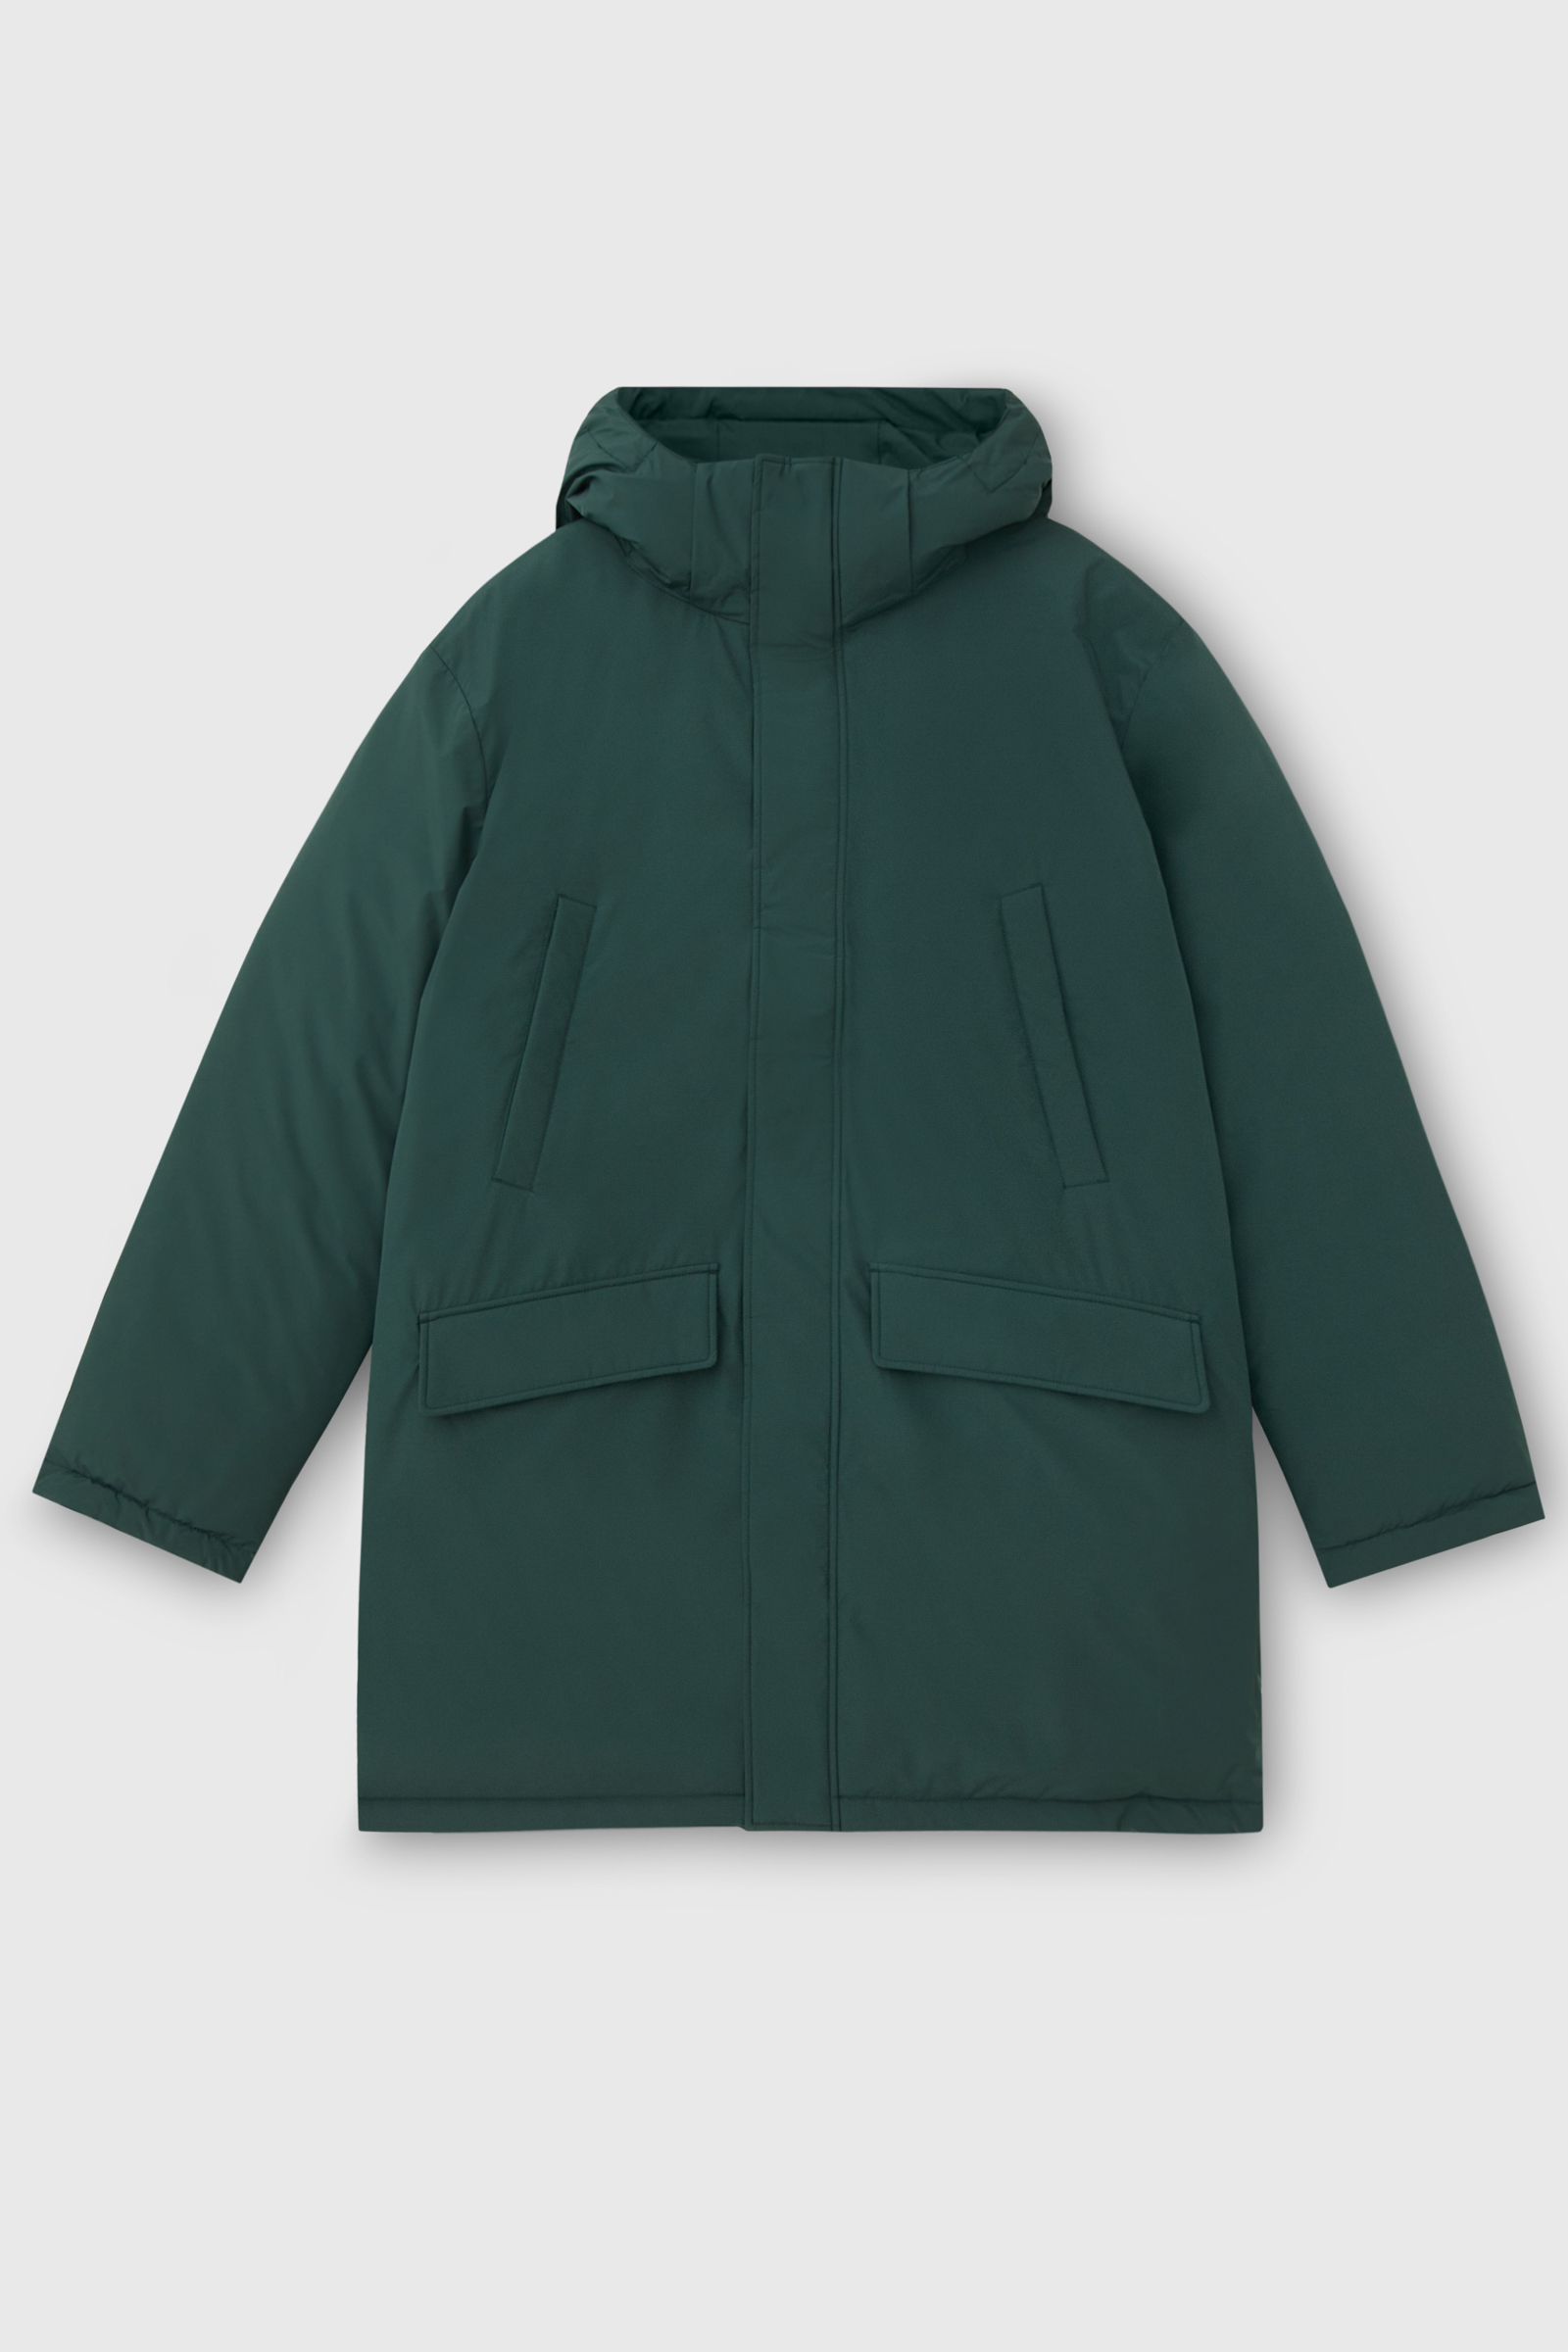 Куртка мужская Finn Flare FAC22008 зеленая 2XL